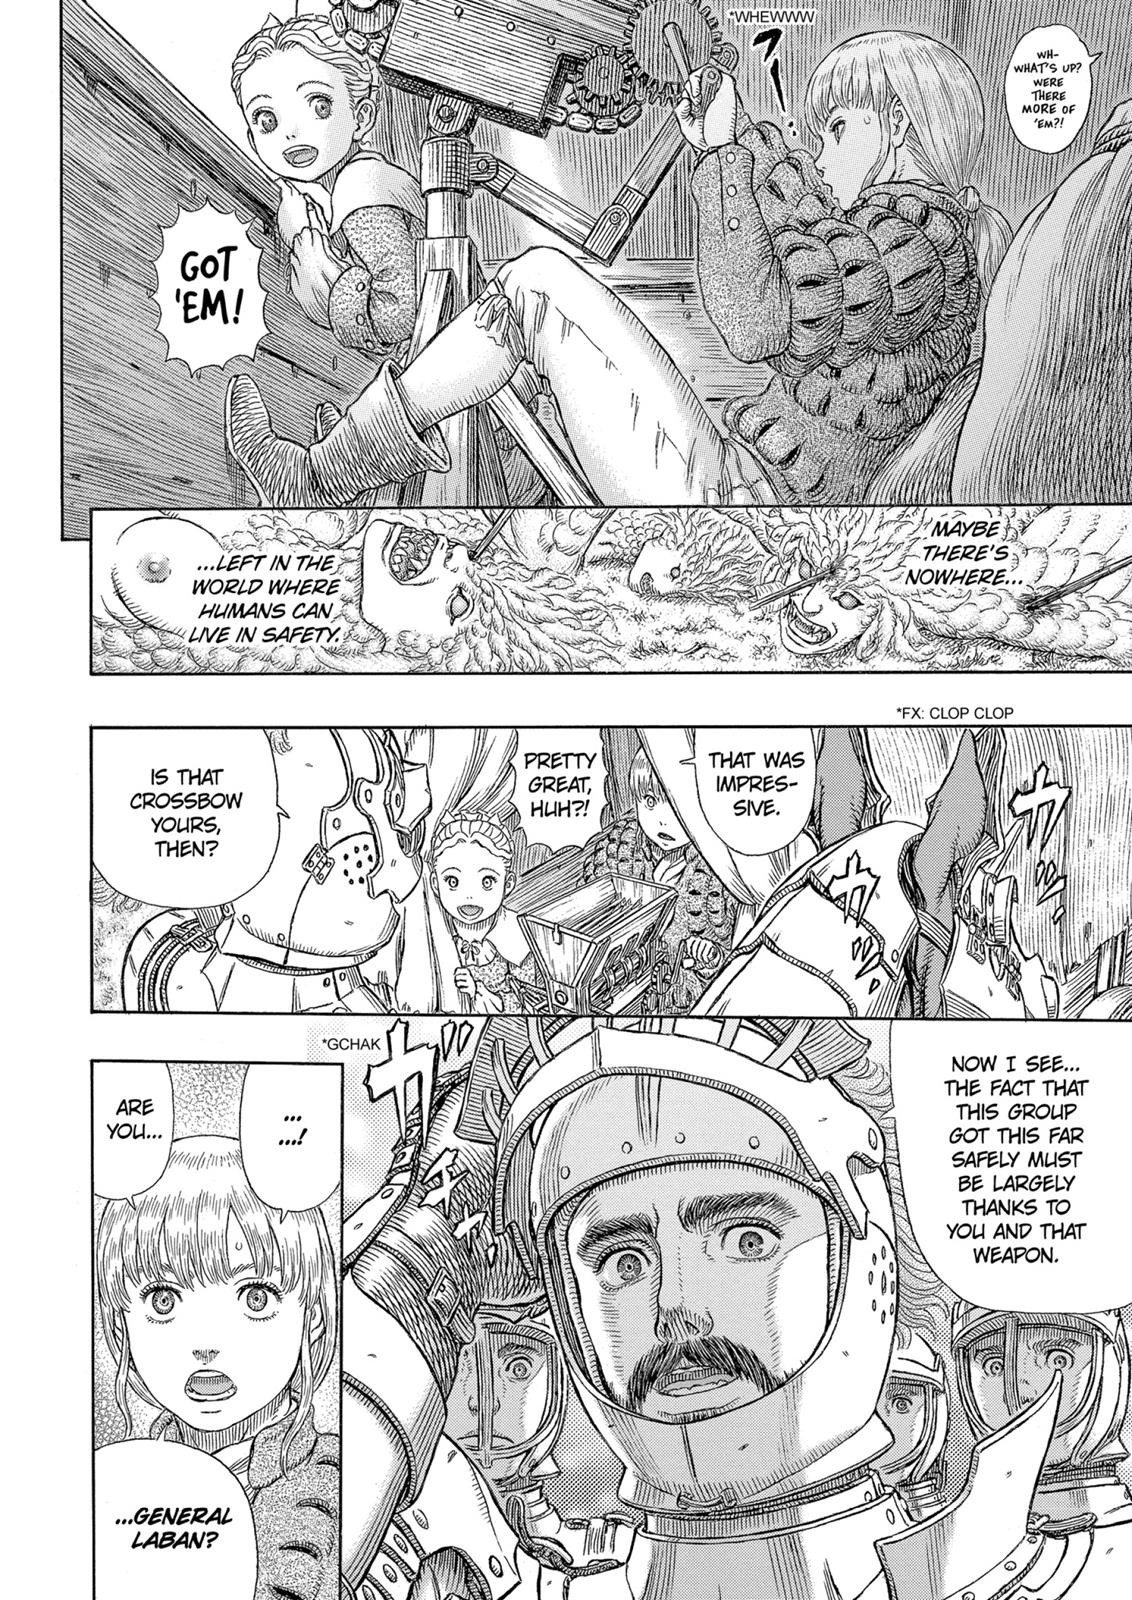 Berserk Manga Chapter 333 image 11